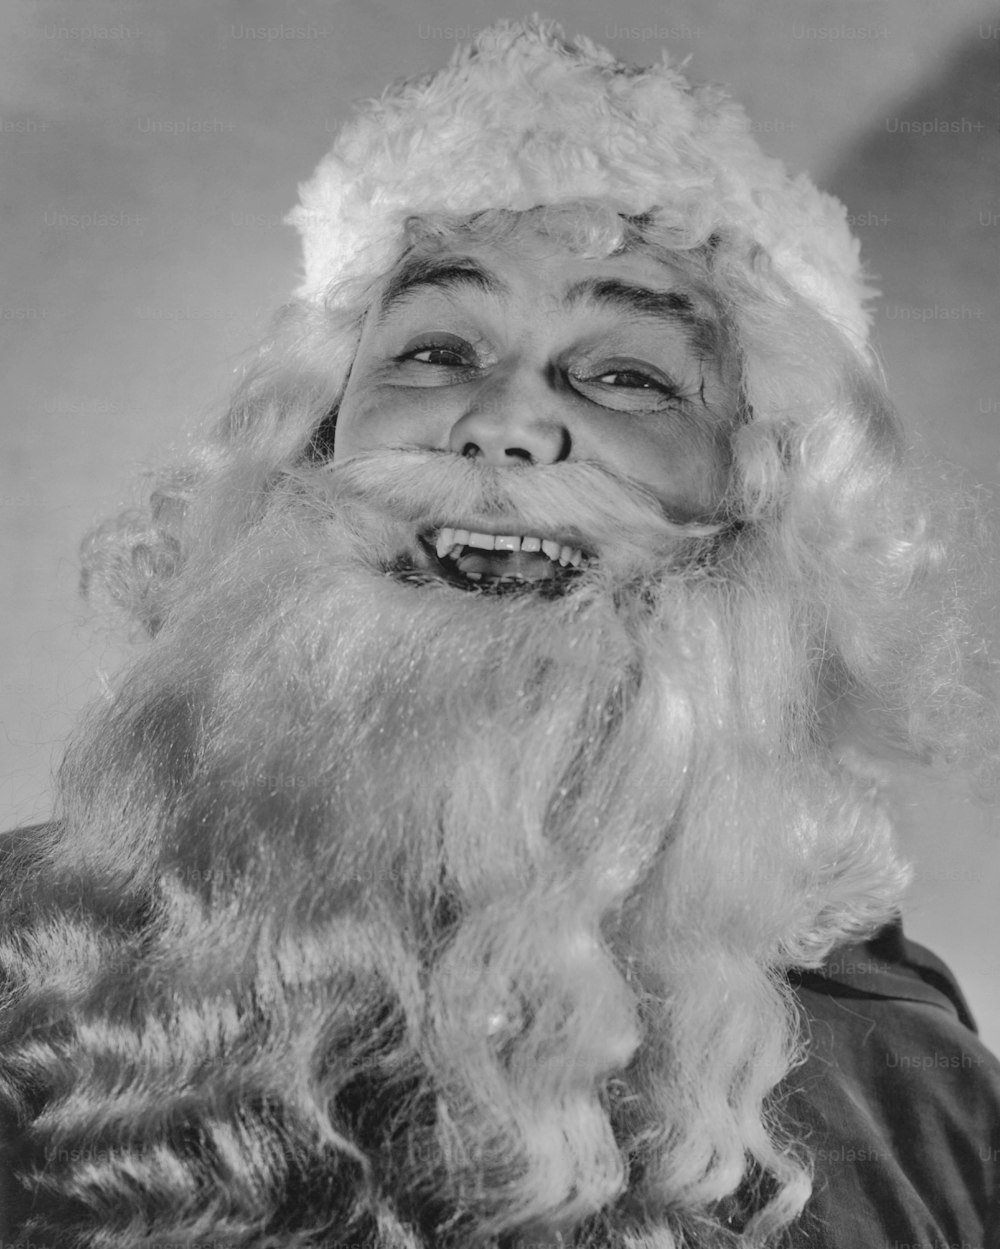 Der Weihnachtsmann lacht 1935. (Foto von Keystone View / FPG / Getty Images)